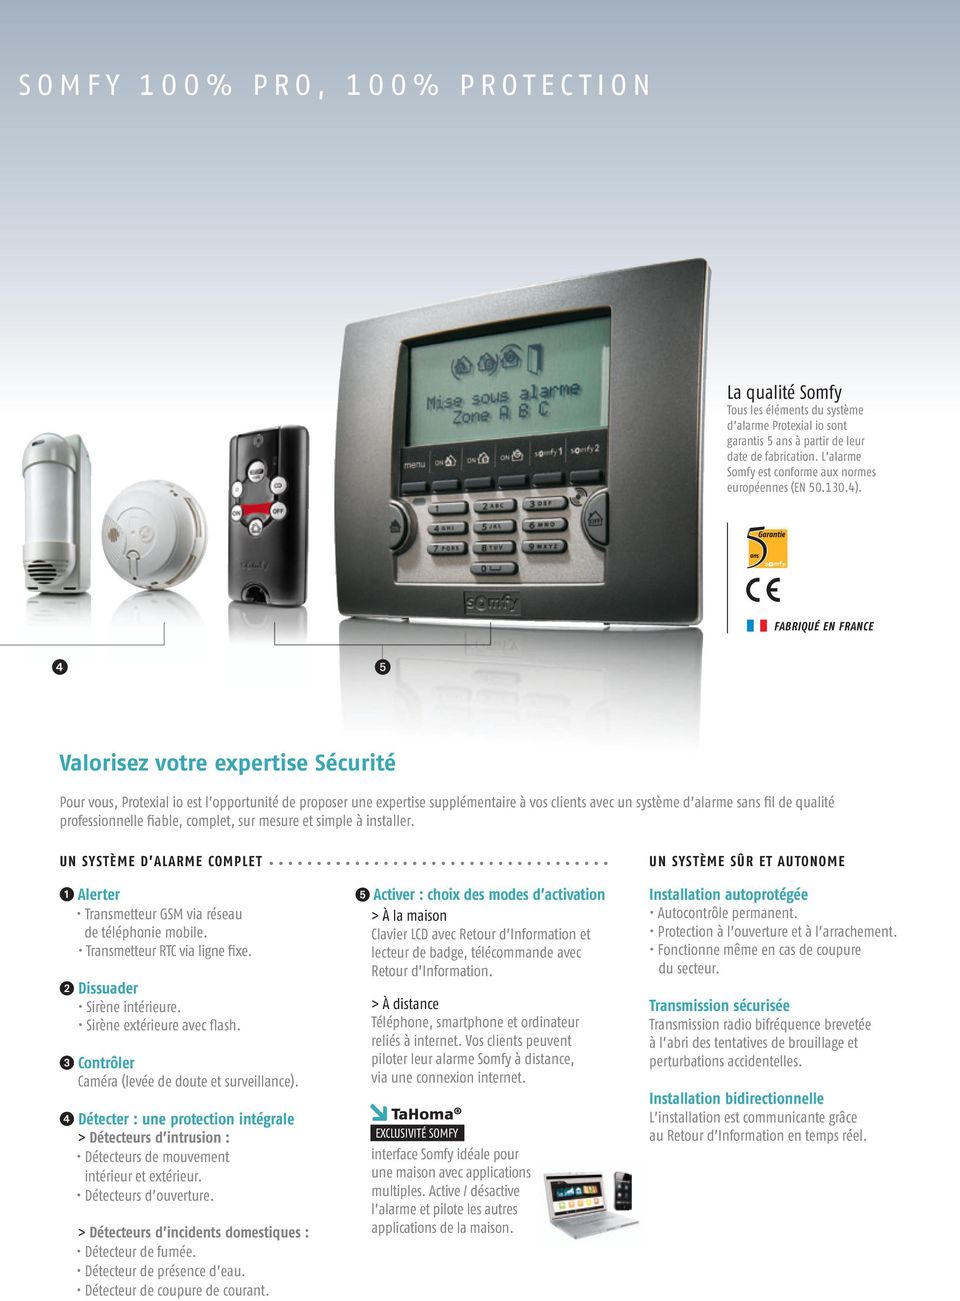 Fabriqué en France 4 5 Valorisez votre expertise Sécurité Pour vous, Protexial io est l opportunité de proposer une expertise supplémentaire à vos clients avec un système d alarme sans fil de qualité